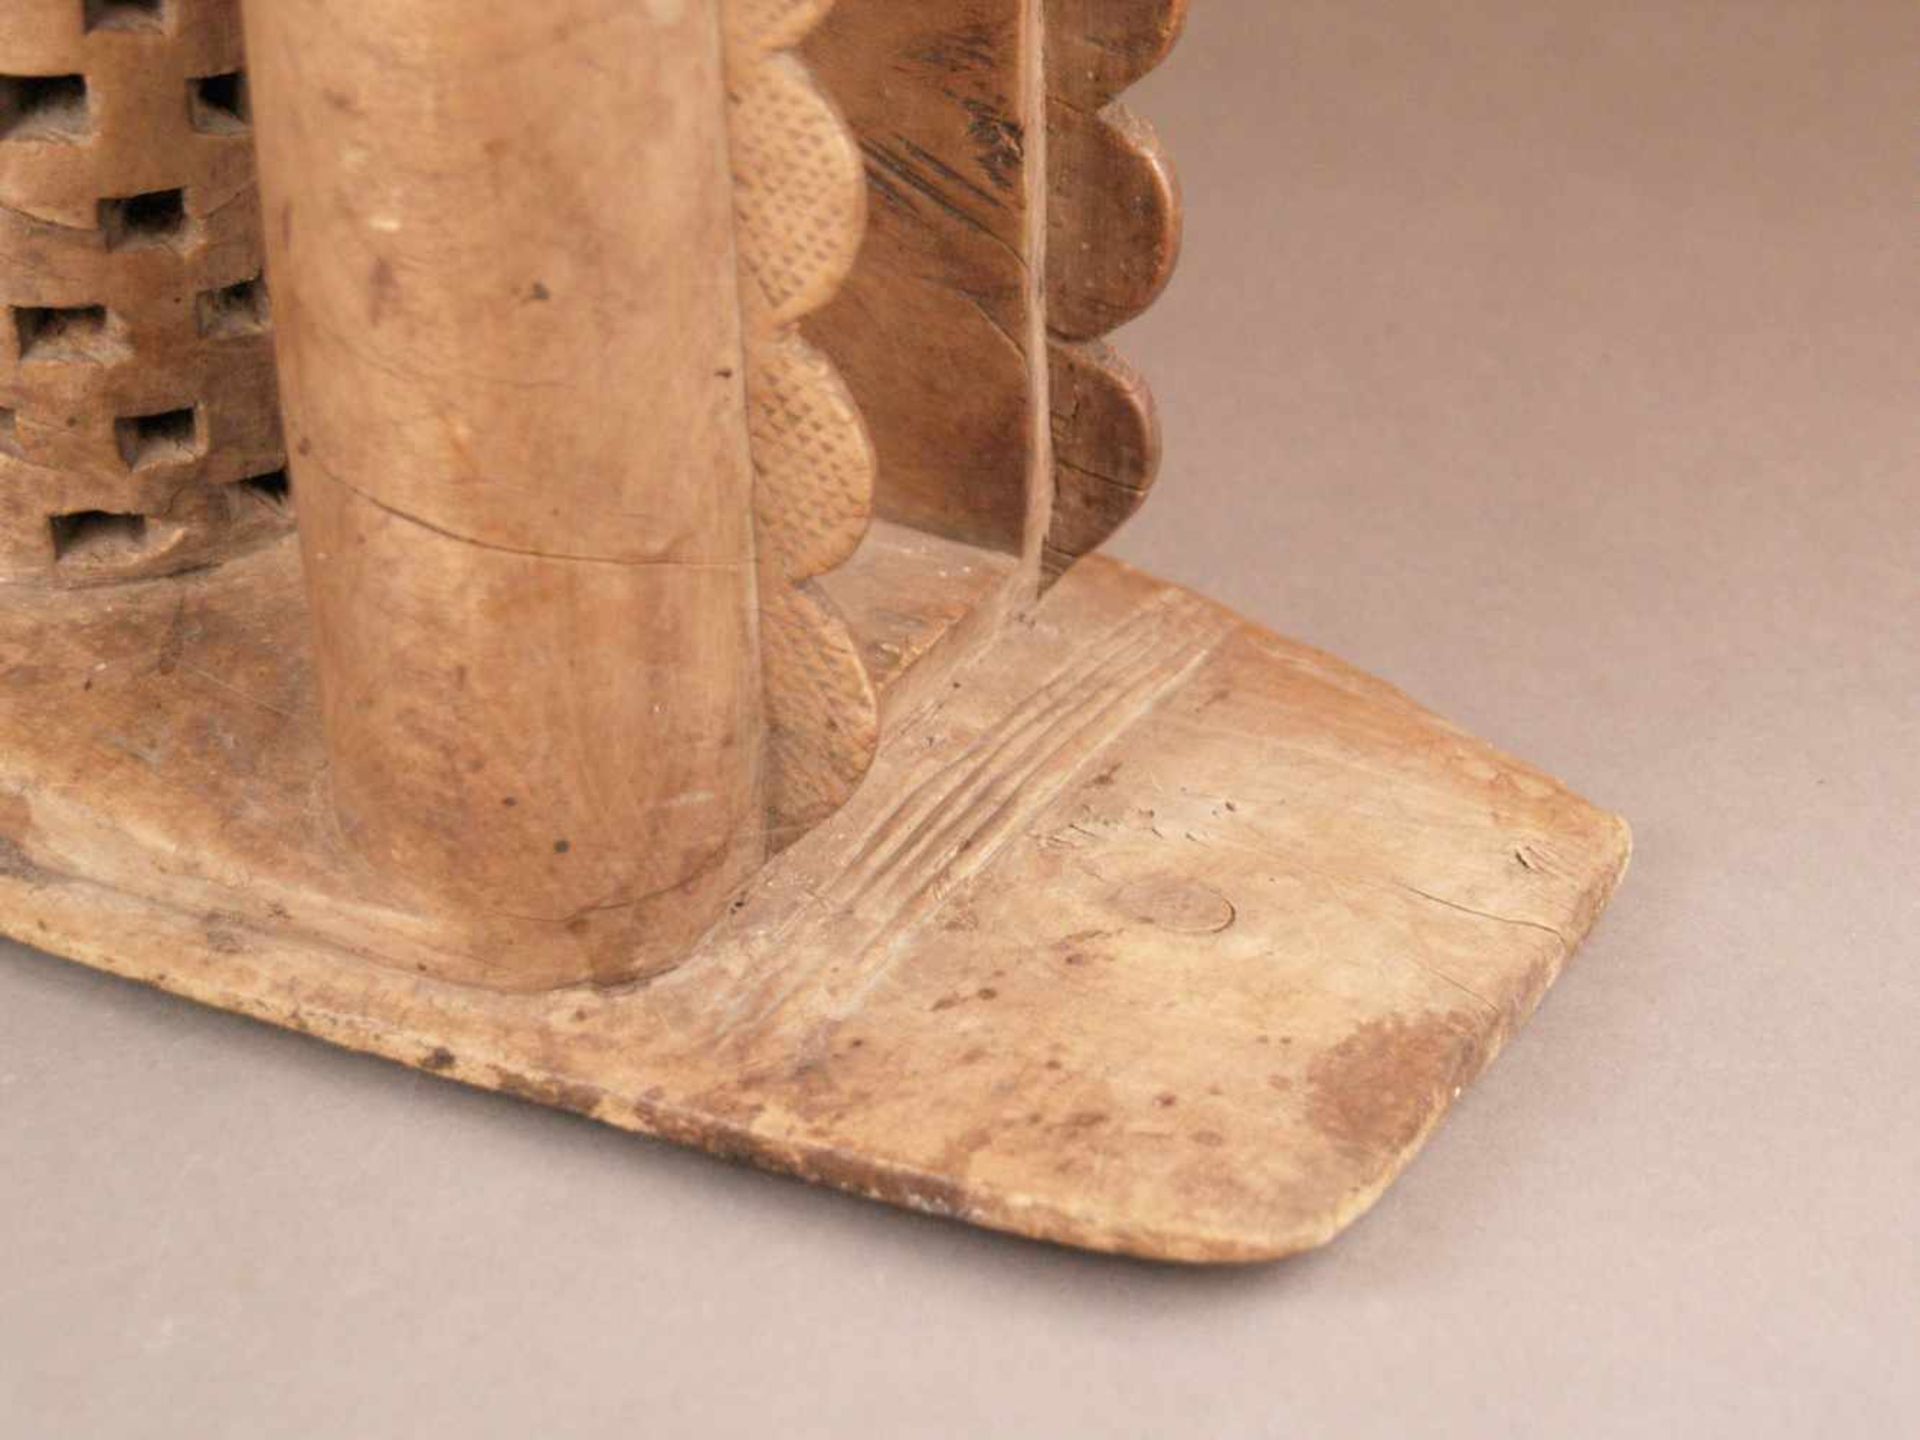 Afrikanischer Hocker - Ashanti, Ghana, wohl 19. Jh., Holz, aus einem Stück geschnitzt, - Bild 4 aus 7